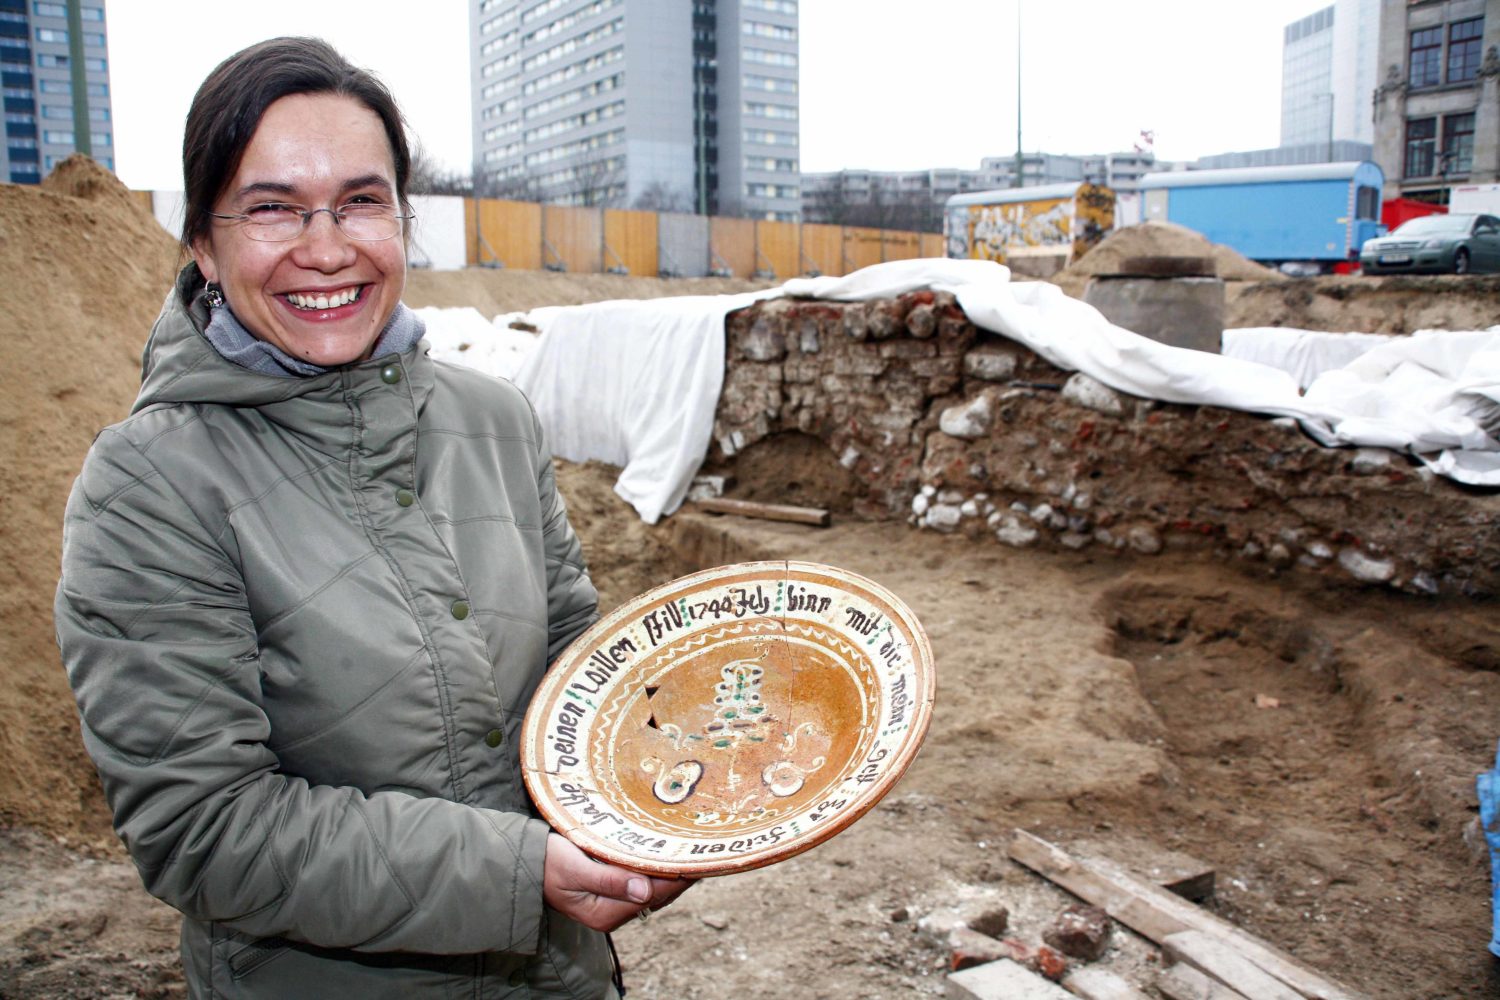 Ausgrabungen Berlin - Archäologin Claudia Maria Melisch zeigt einen Teller aus dem Jahr 1744 gefunden während Ausgrabungen am Petriplatz in Berlin, Januar 2008. Foto: Imago/Sabine Gudath